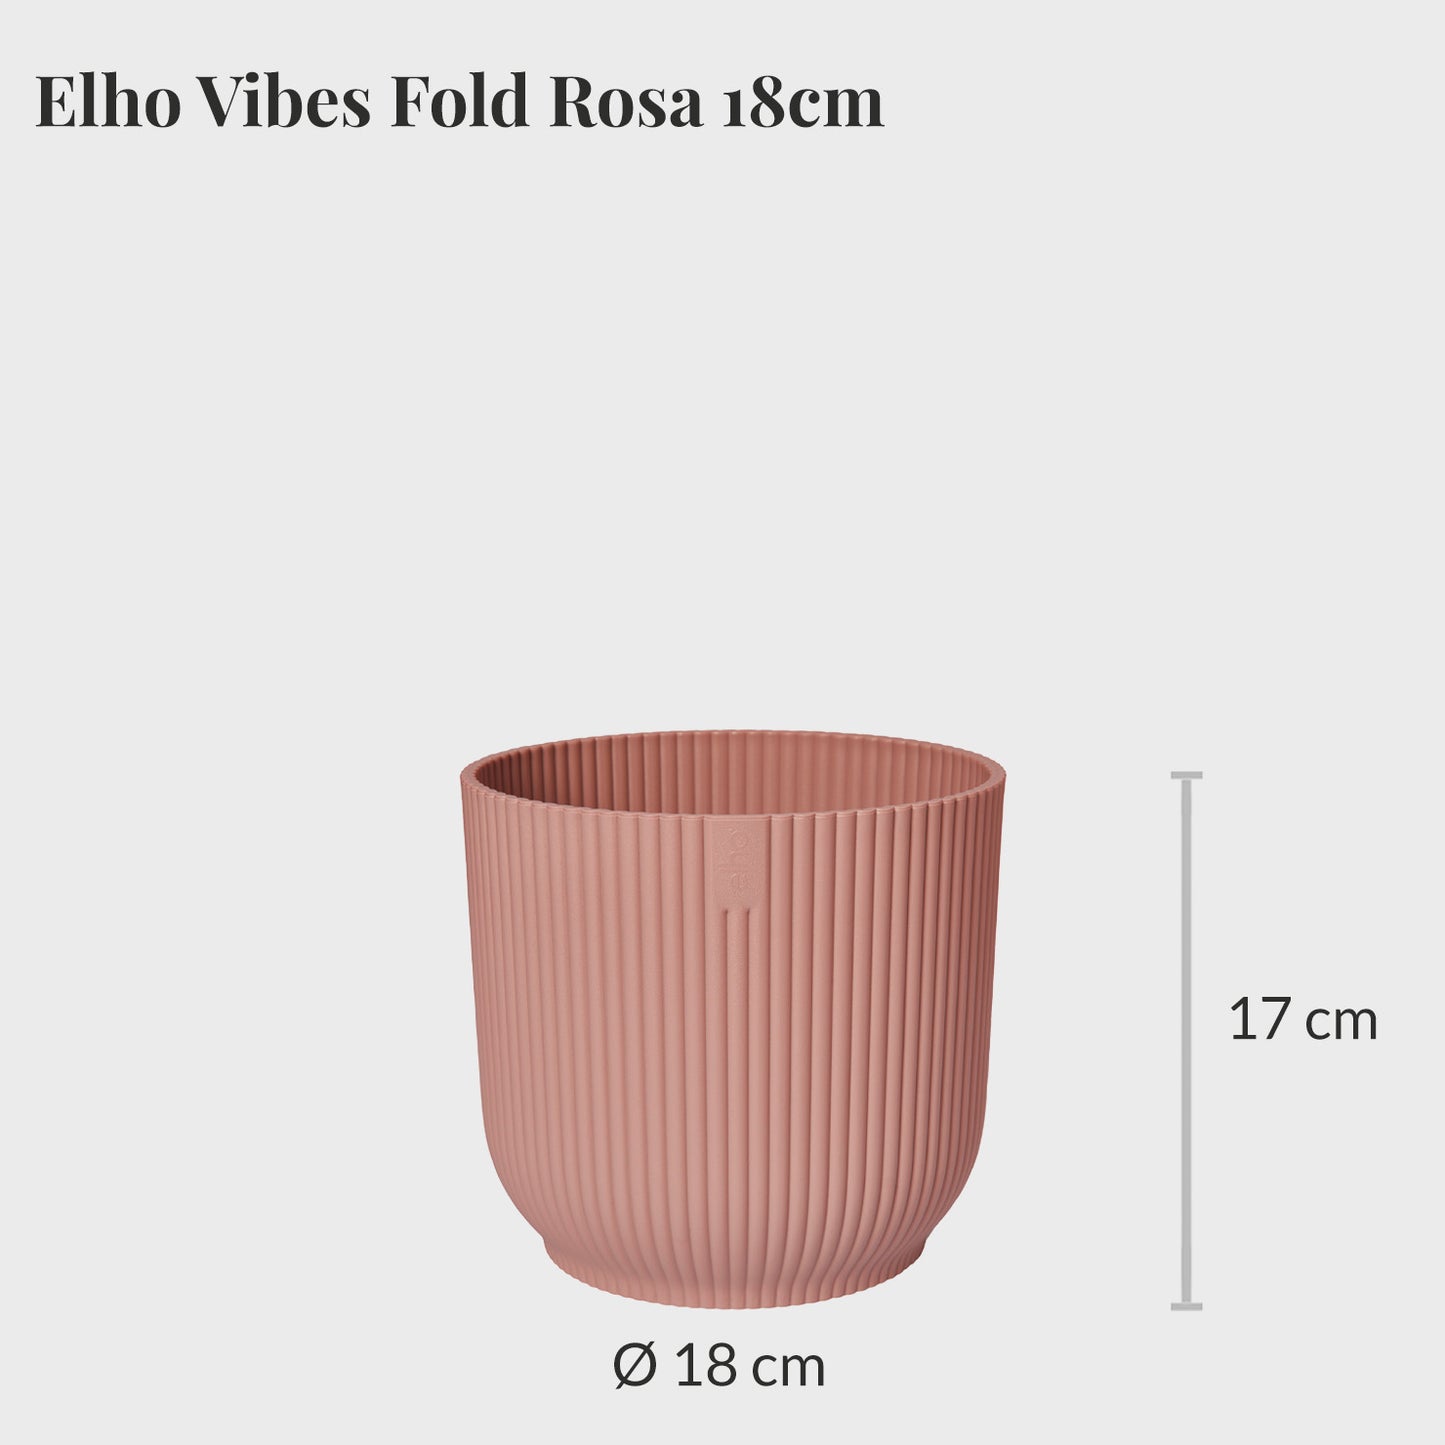 Elho Vibes Fold 18cm